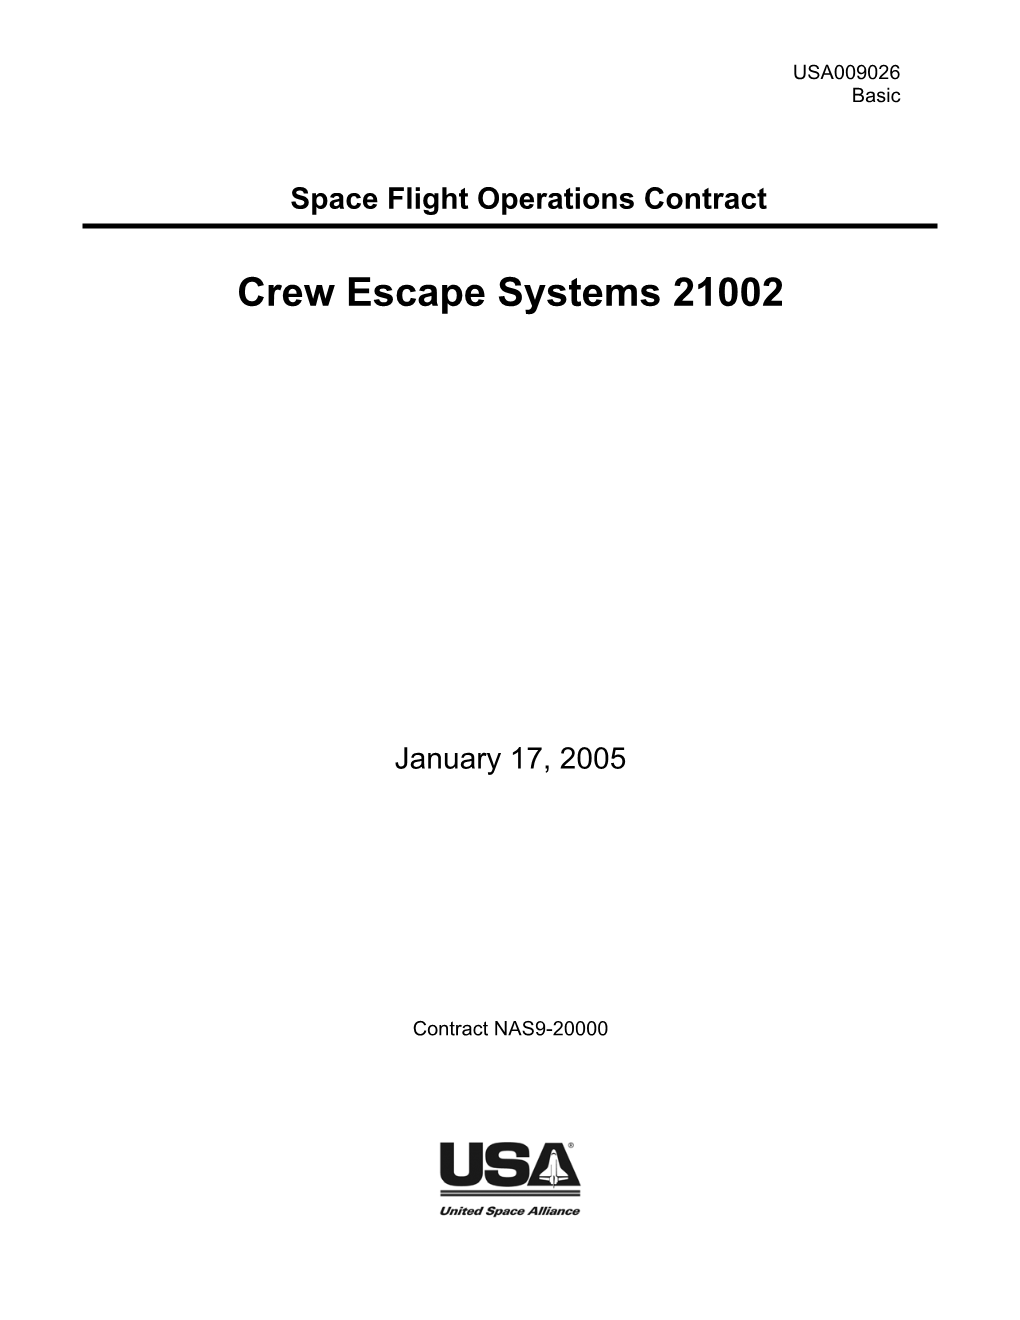 Crew Escape Systems 21002